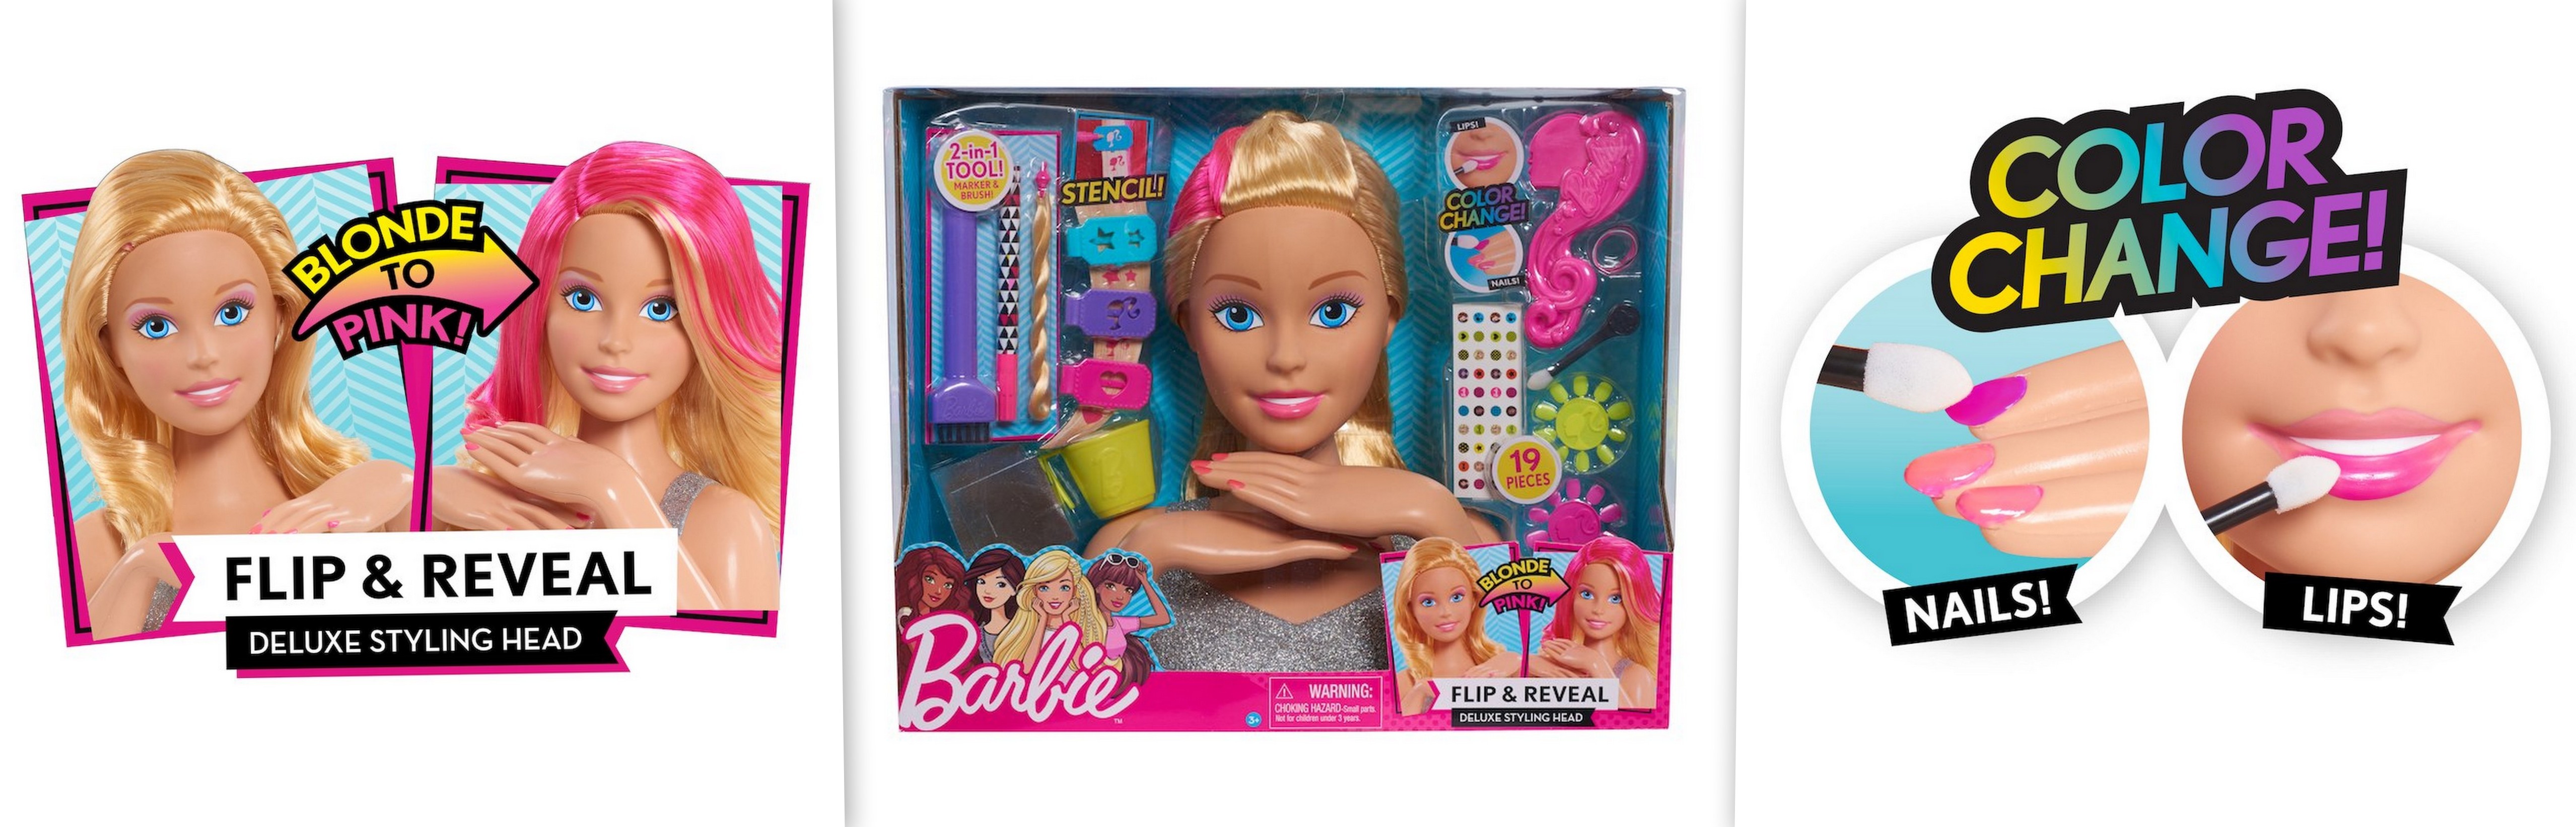 deluxe styling head, barbie girl, barbie beauty